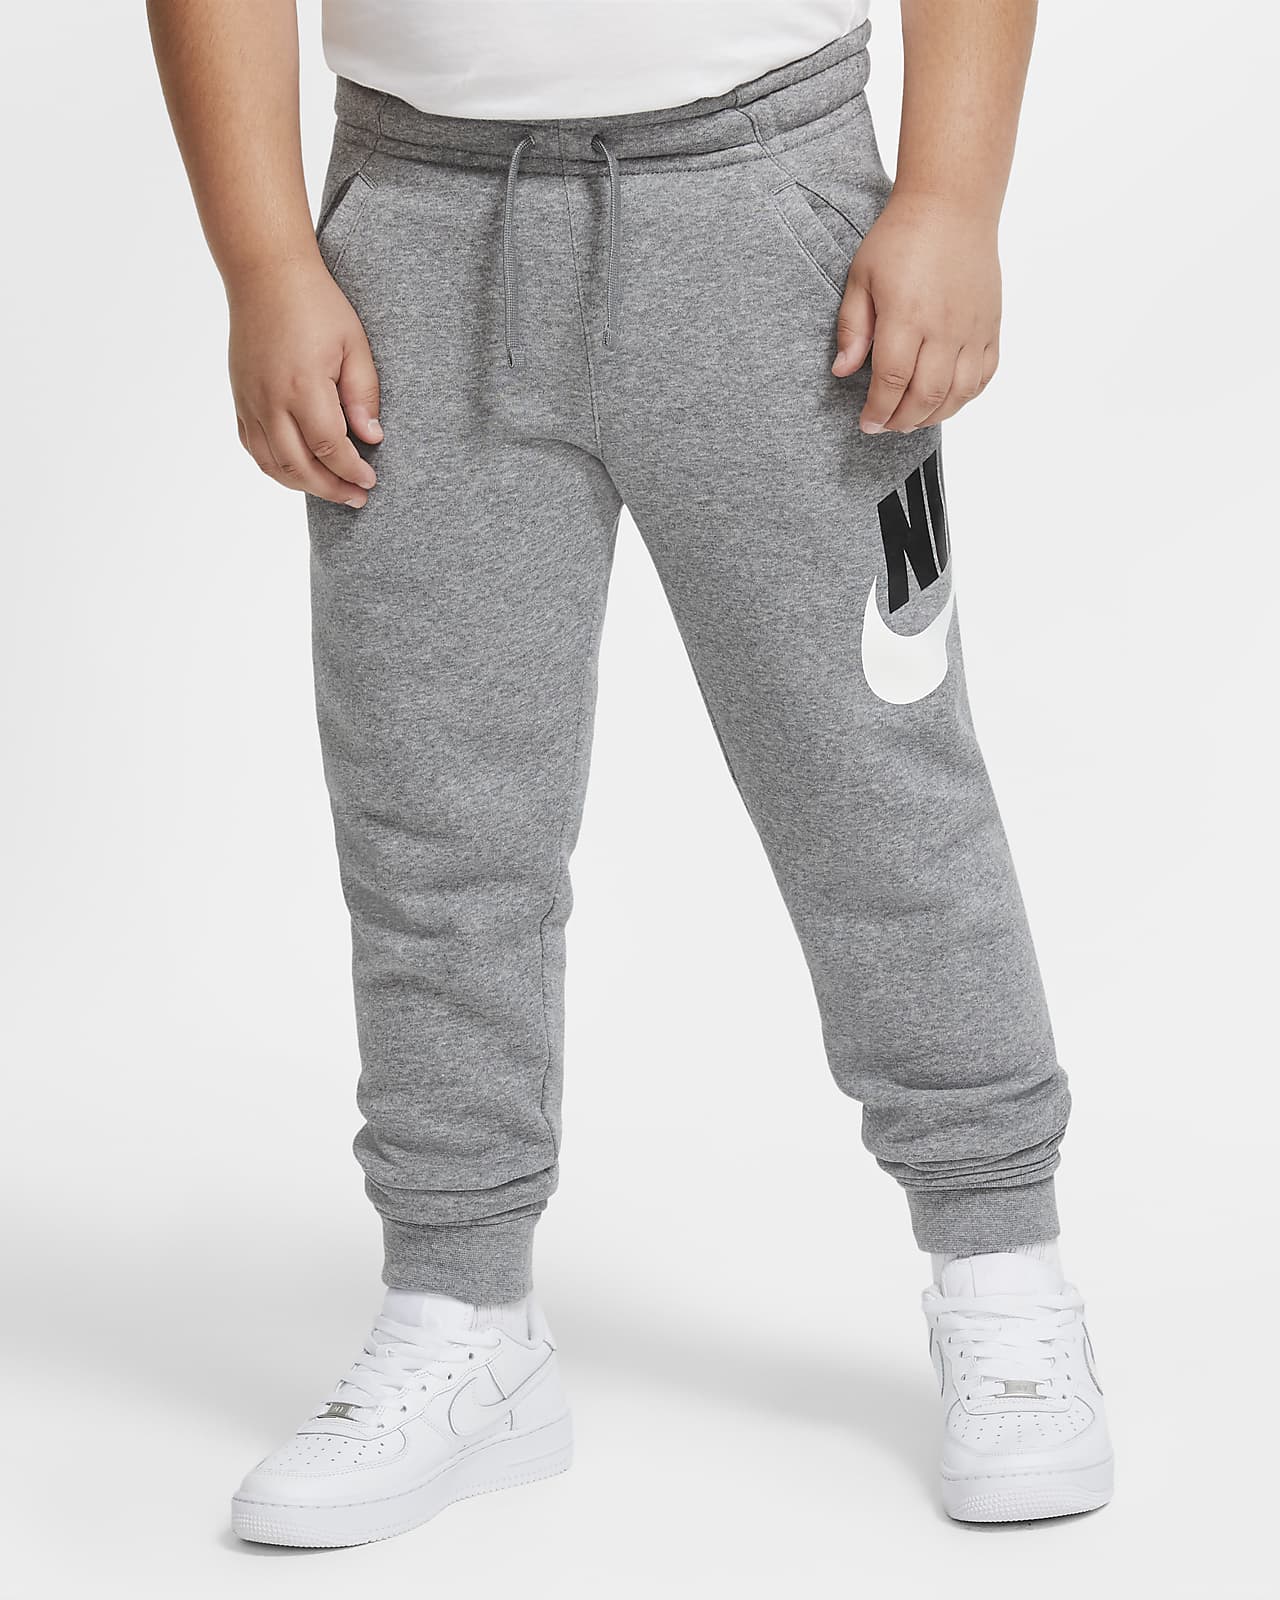 Nike Sportswear Club Fleece Pantalons (talles grans) - Nen